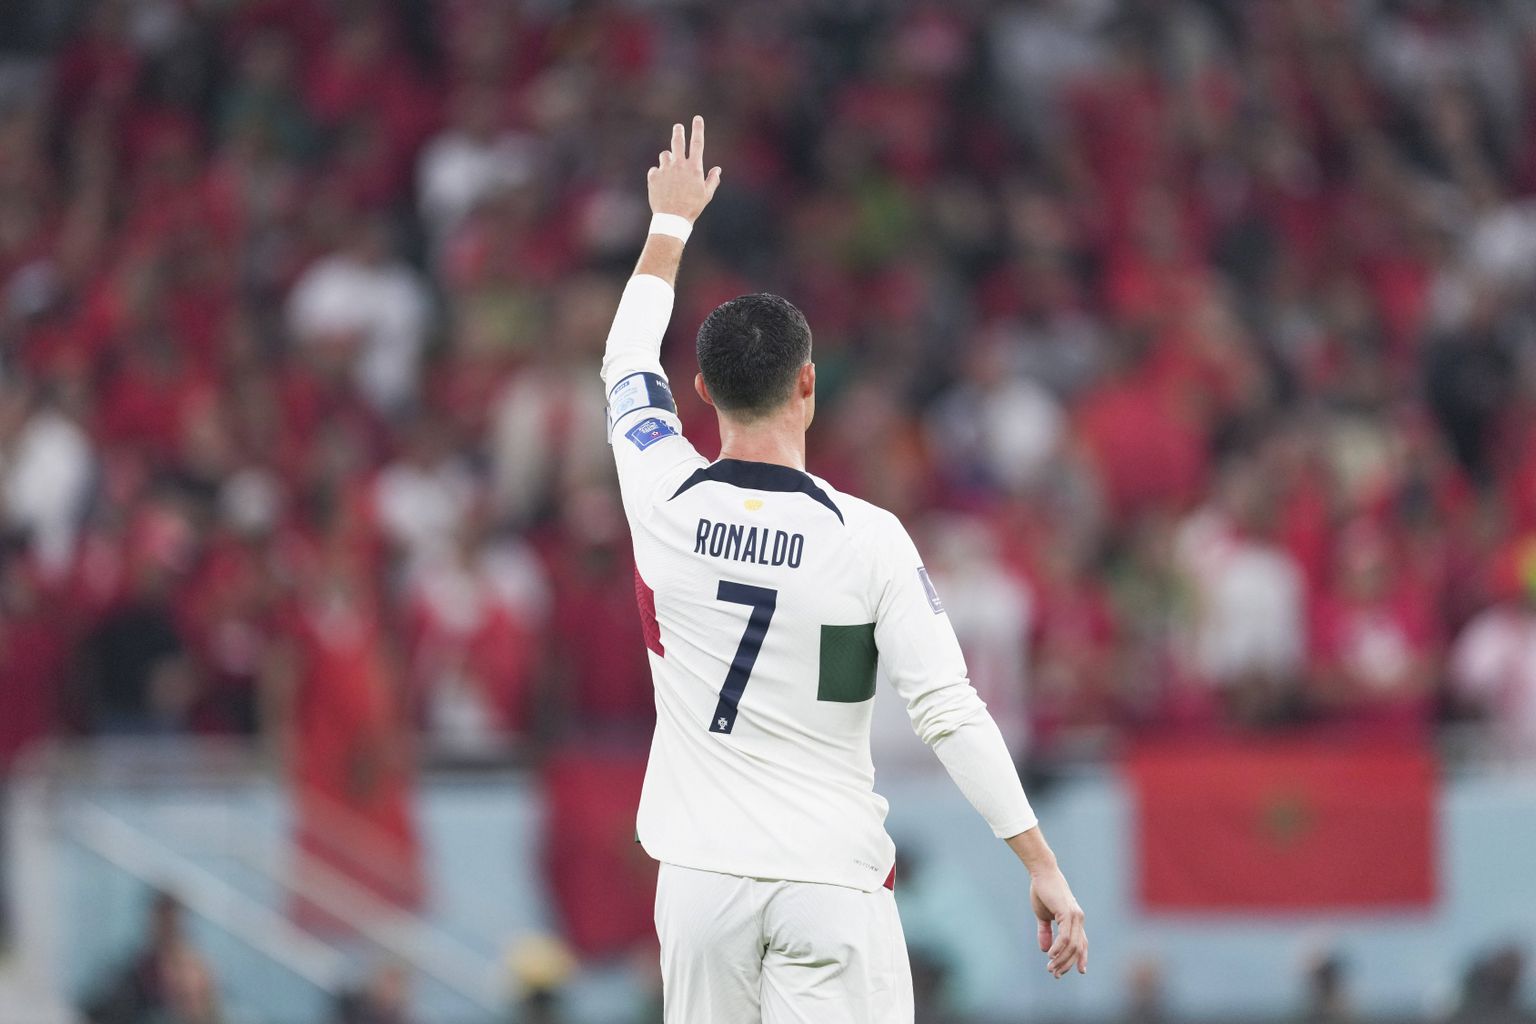 Cristiano Ronaldo ja Portugal langesid MMi veerandfinaalis. See võis olla läbi aegade ühe parema jalgpalluri viimane suur mäng.